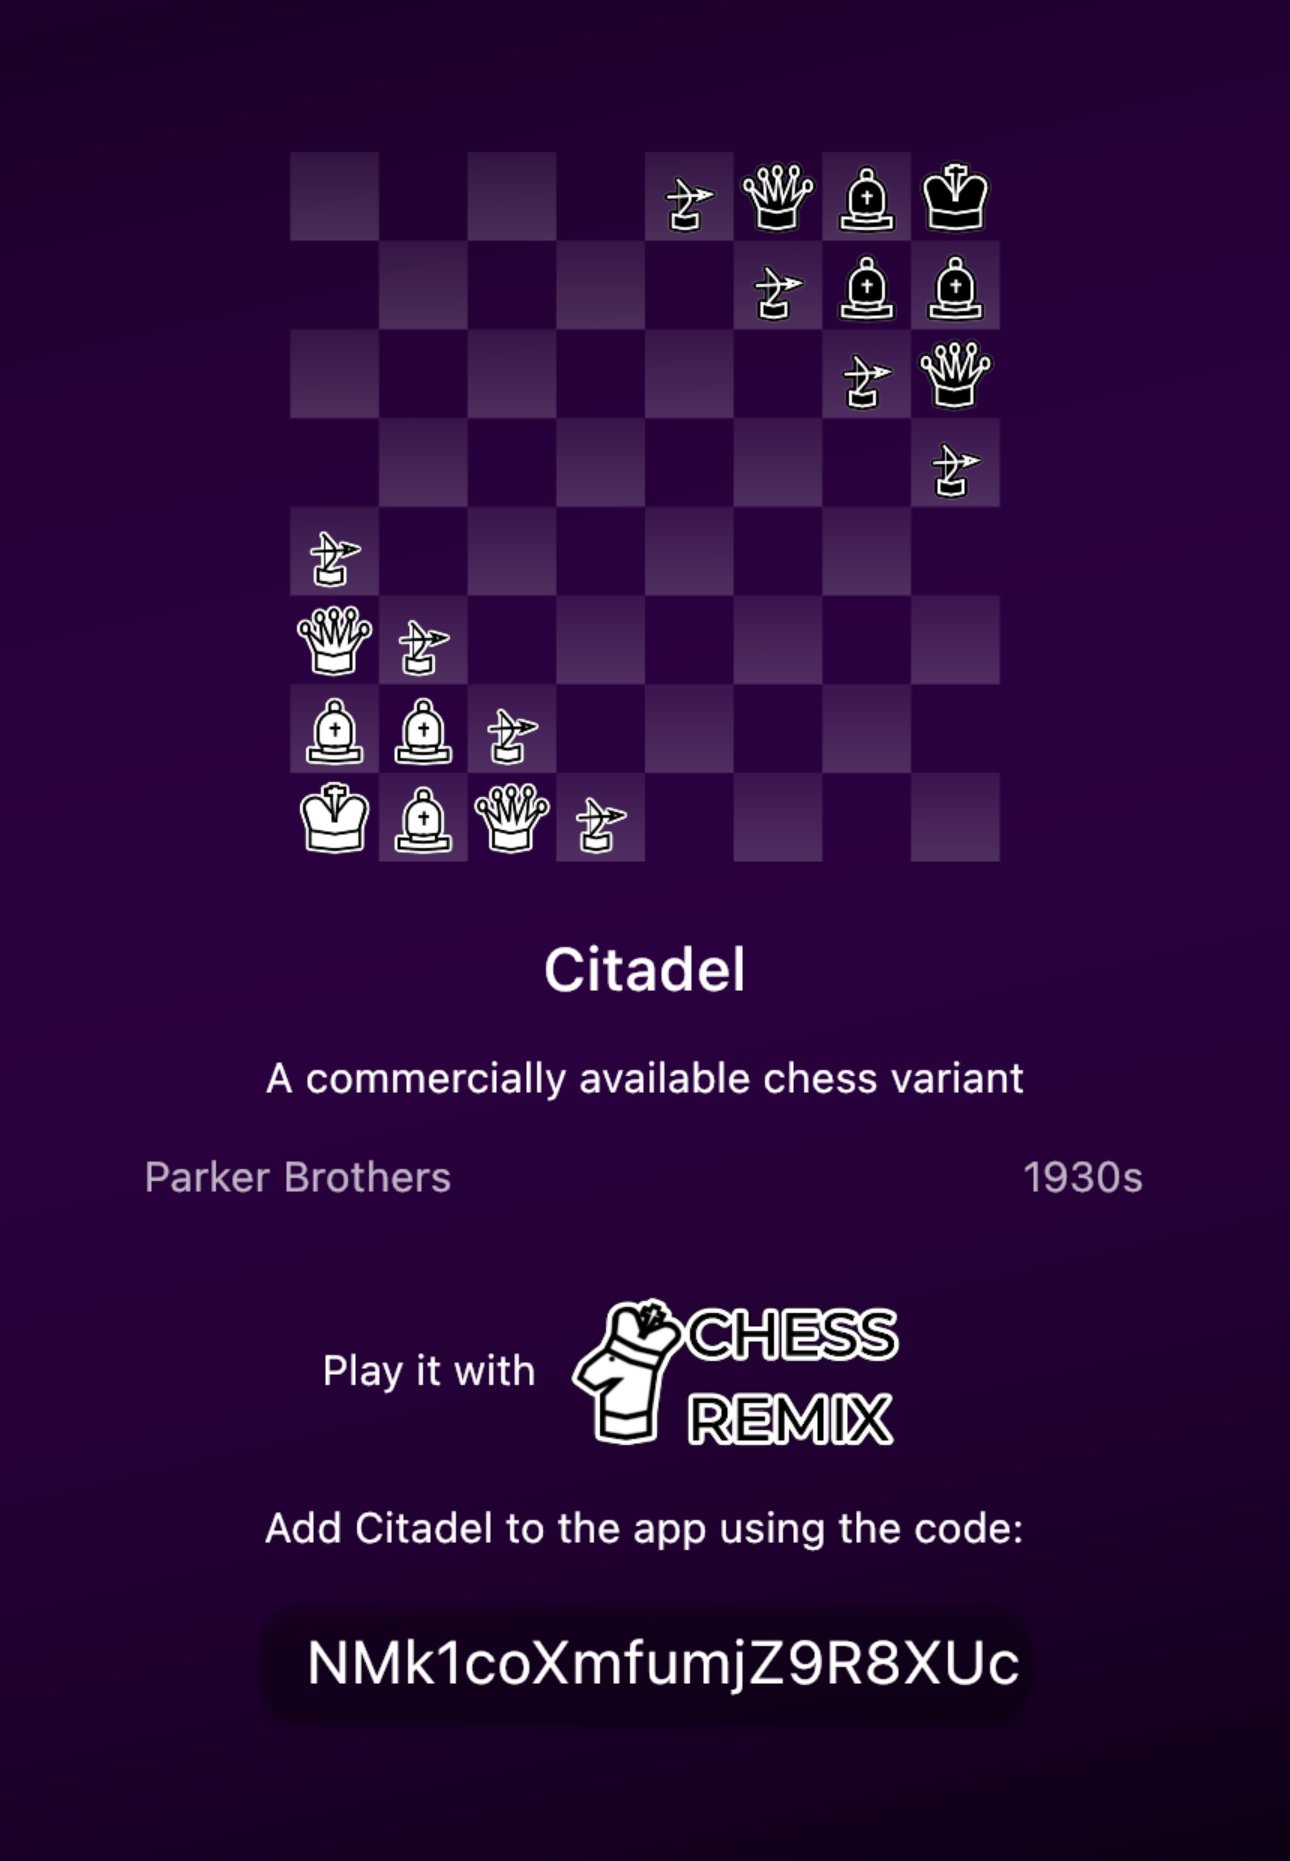 Steam Community :: ChessBase 15 Steam Edition